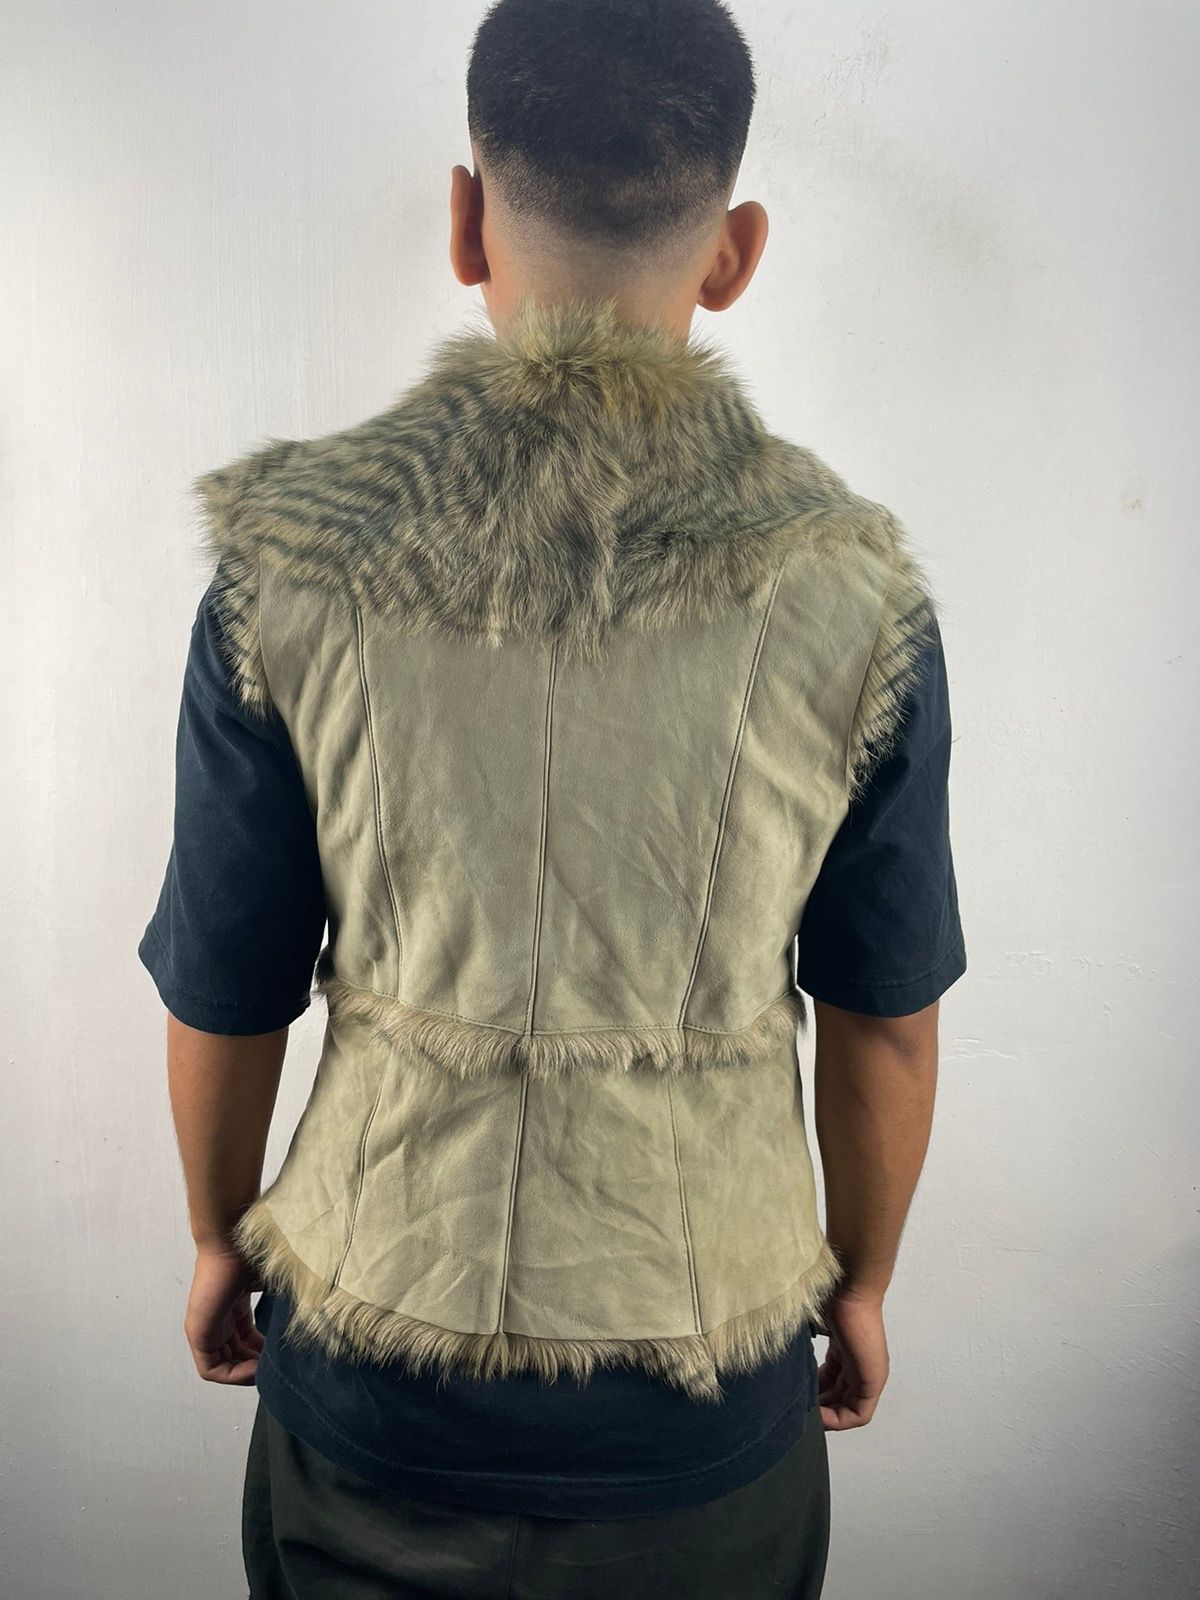 Japanese Brand Vintage Fur Goat Sheepskin Patchwork Vest Jacket Size US M / EU 48-50 / 2 - 2 Preview